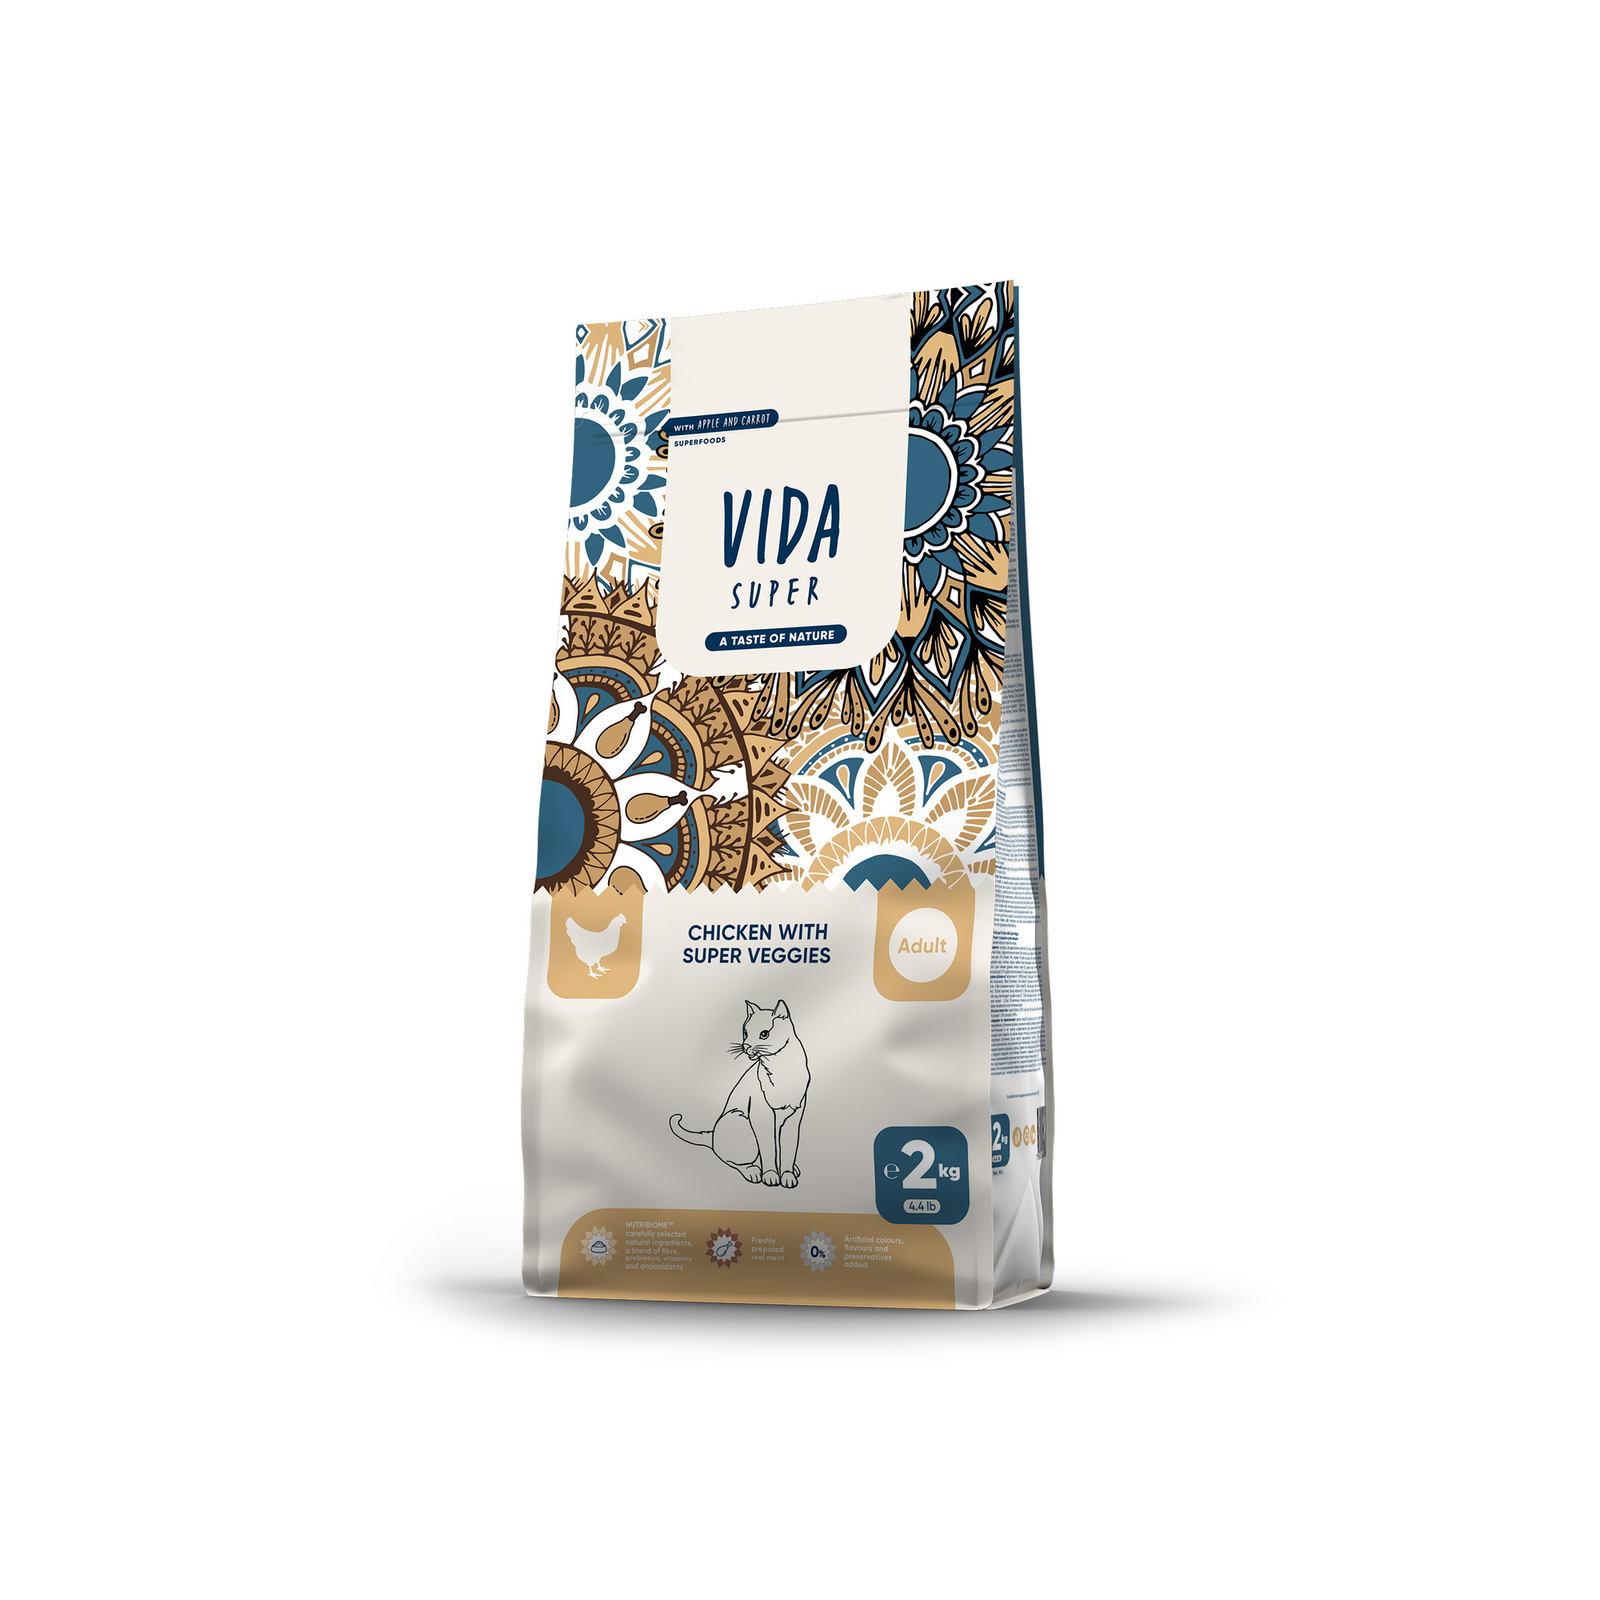 VIDA Super VIDA Super корм для взрослых кошек с курицей и овощами (2 кг)